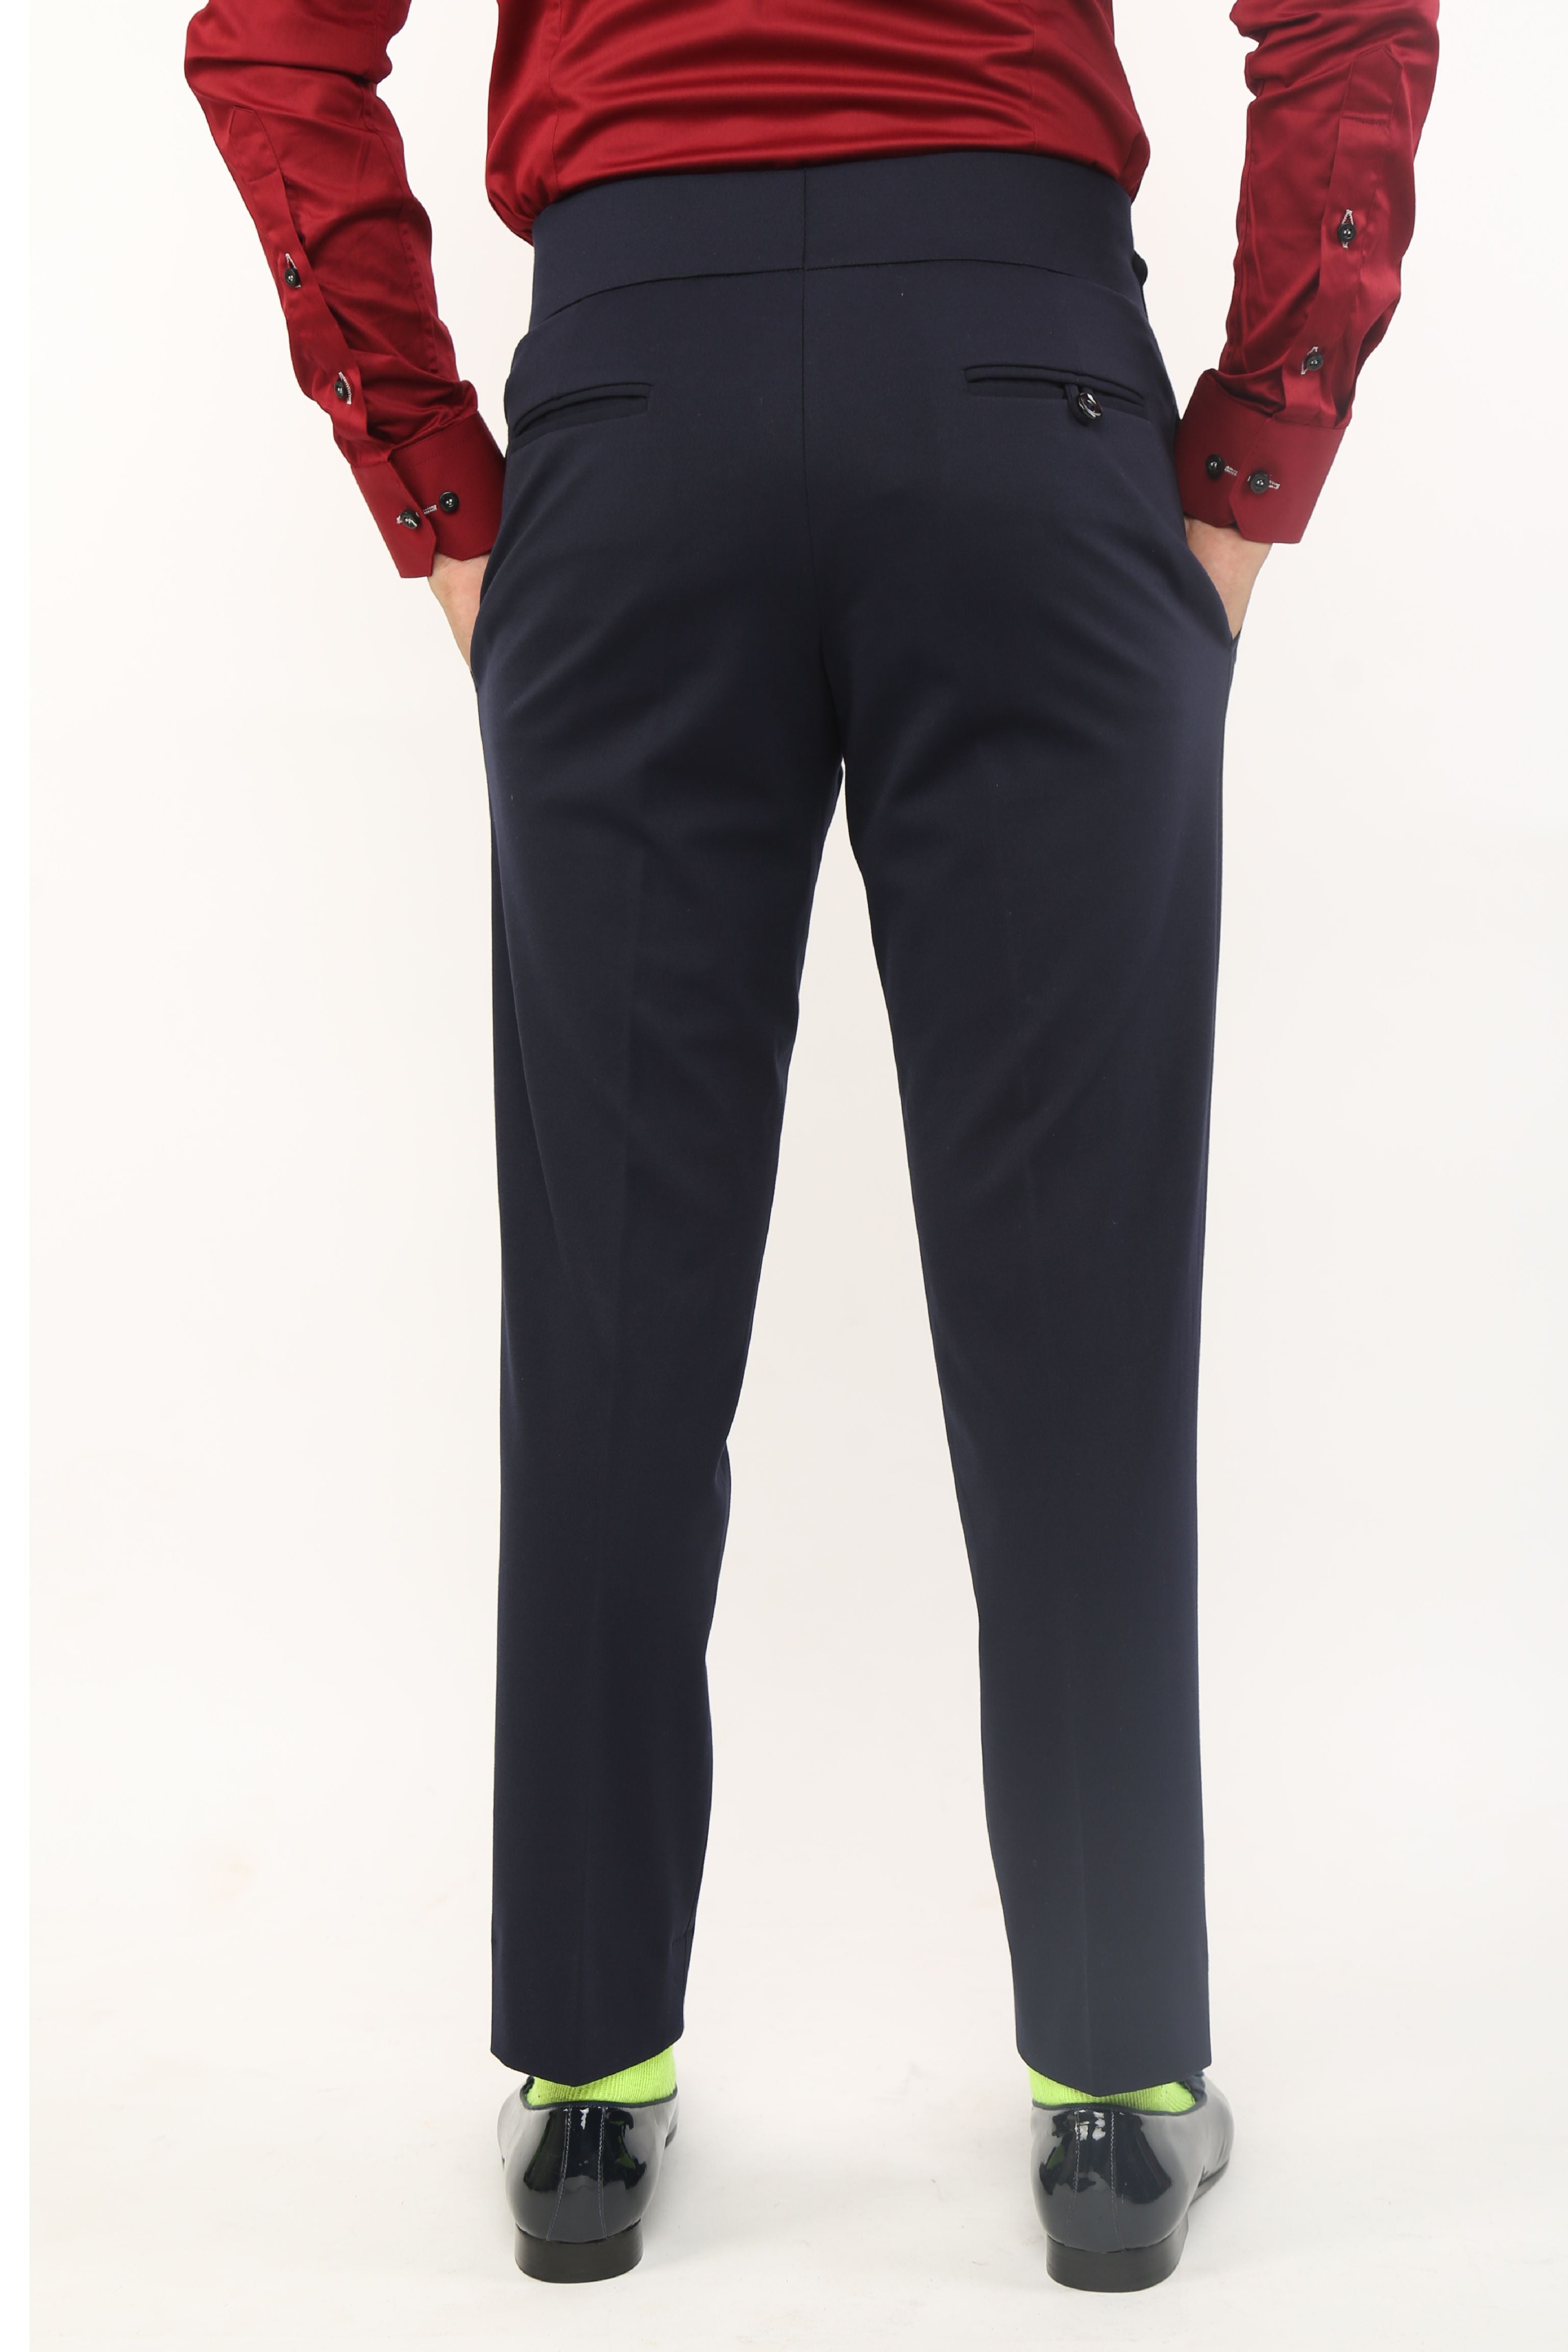 Top 80+ beltless pants trousers latest - in.eteachers